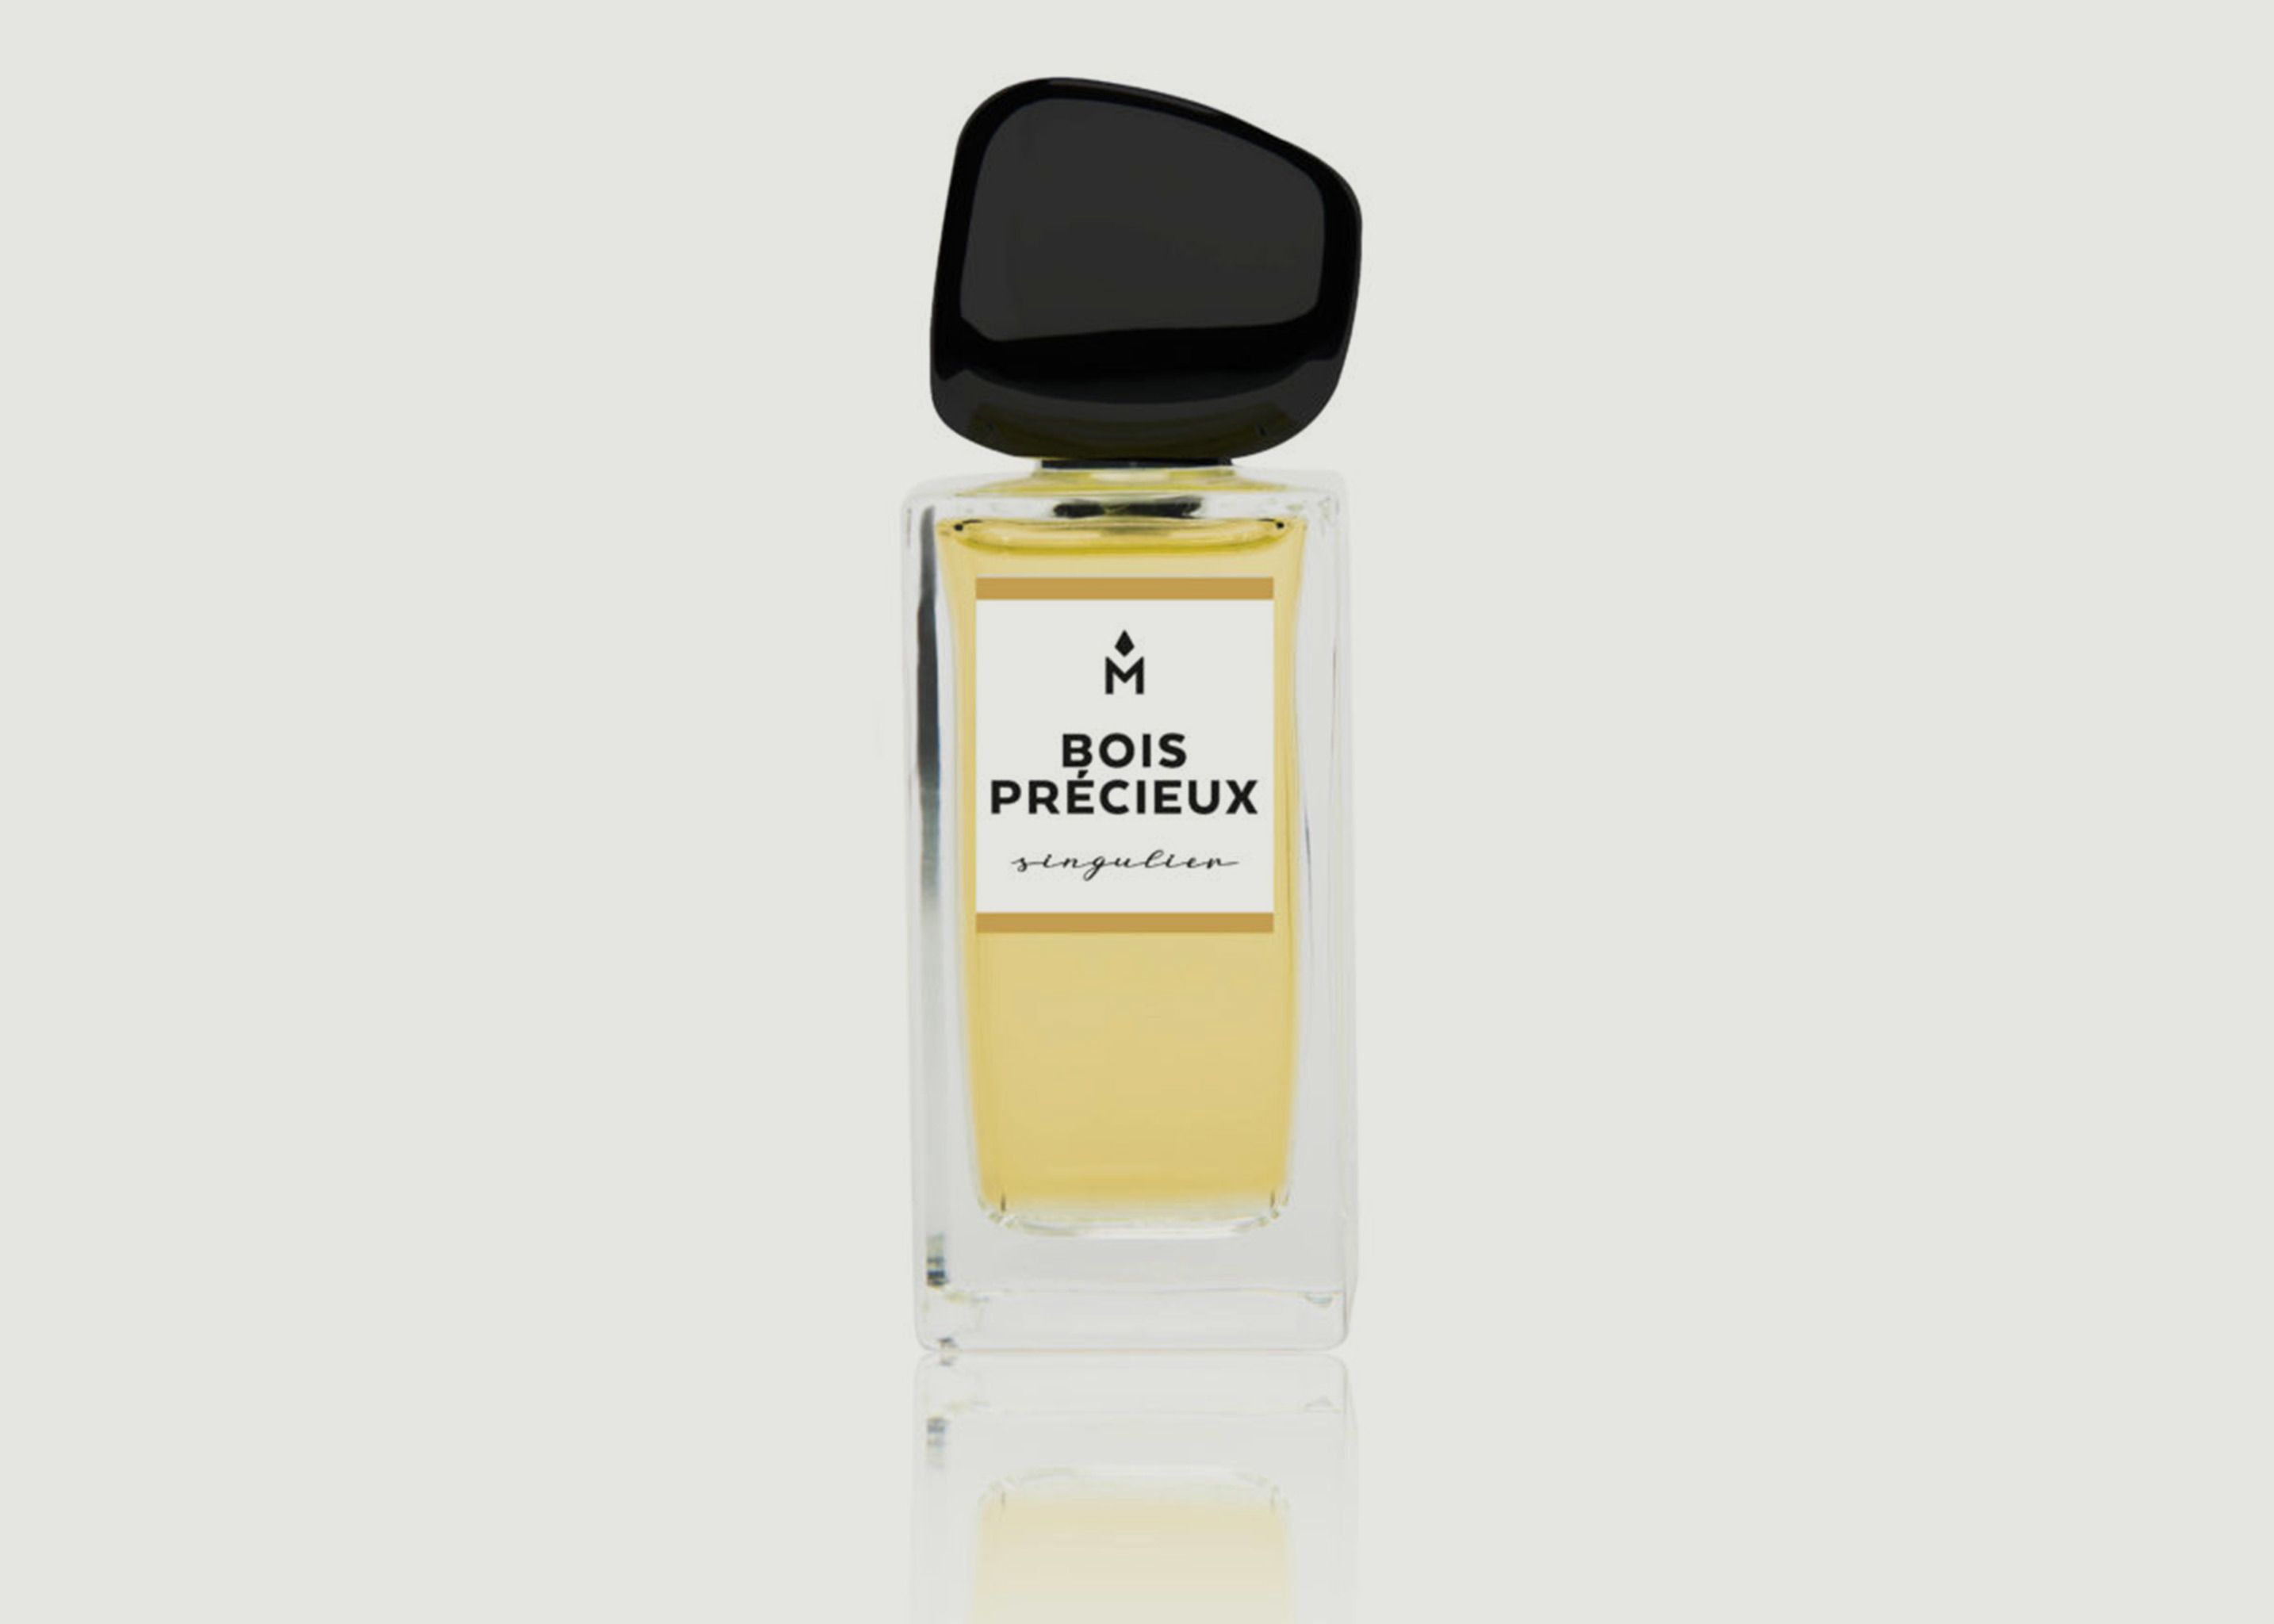 Bois Précieux 50ml Perfume - Ausmane Paris